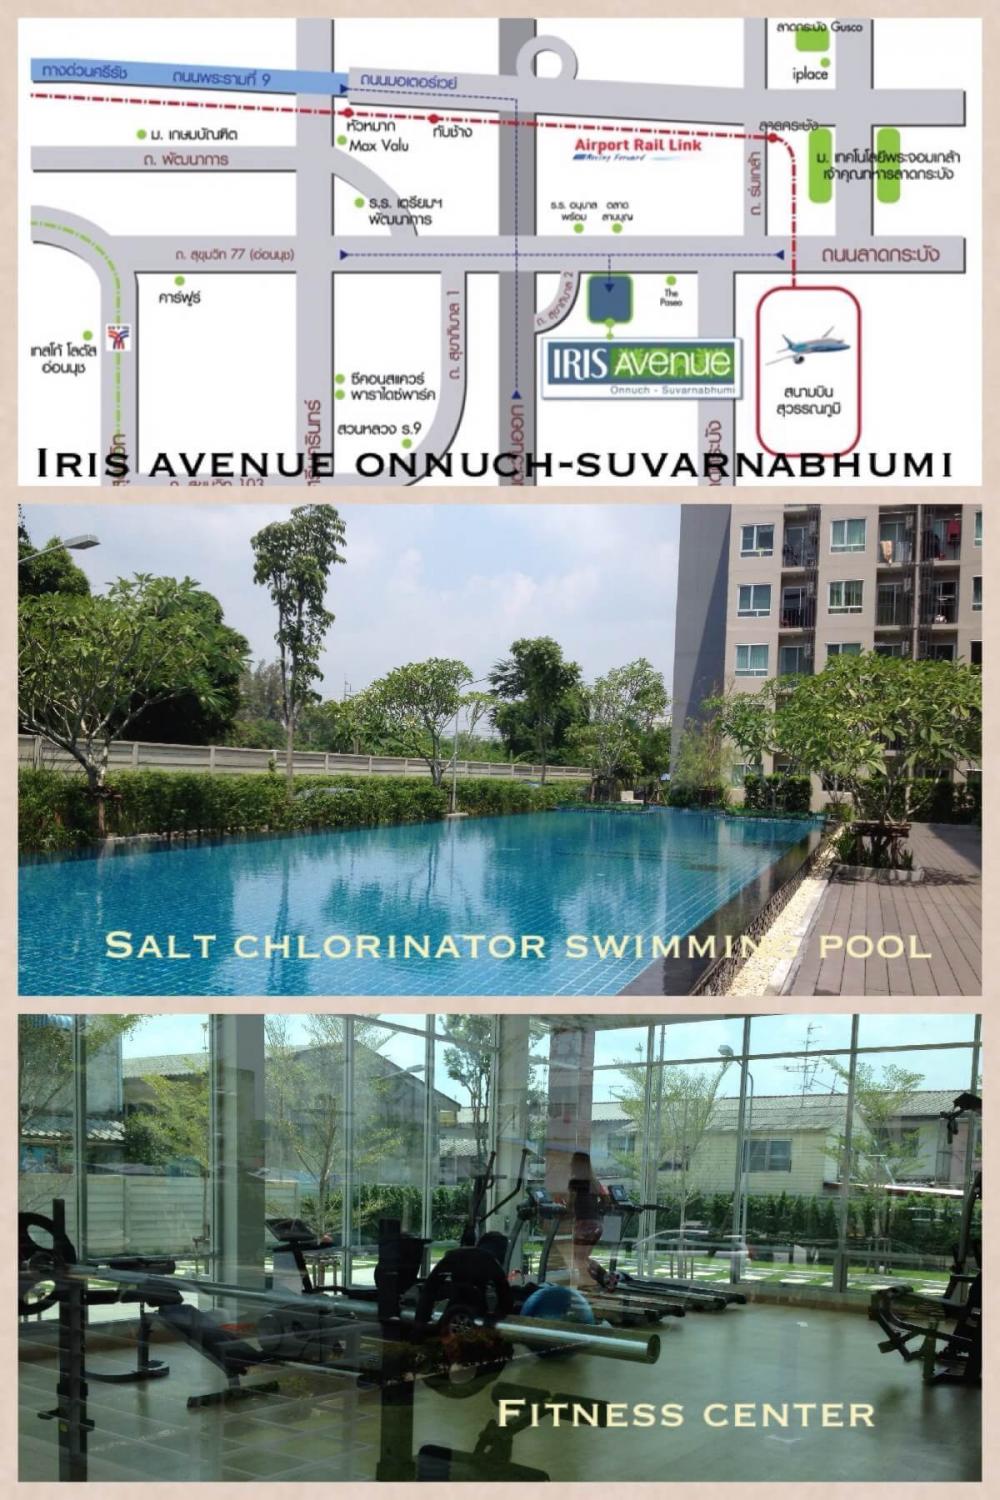 เช่าคอนโด ไอริส แอเวนิว อ่อนนุช-สุวรรณภูมิ คอนโดมิเนียม - Condo Rental IRIS Avenue Onnuch-Suvarnabhumi condominium - 557057